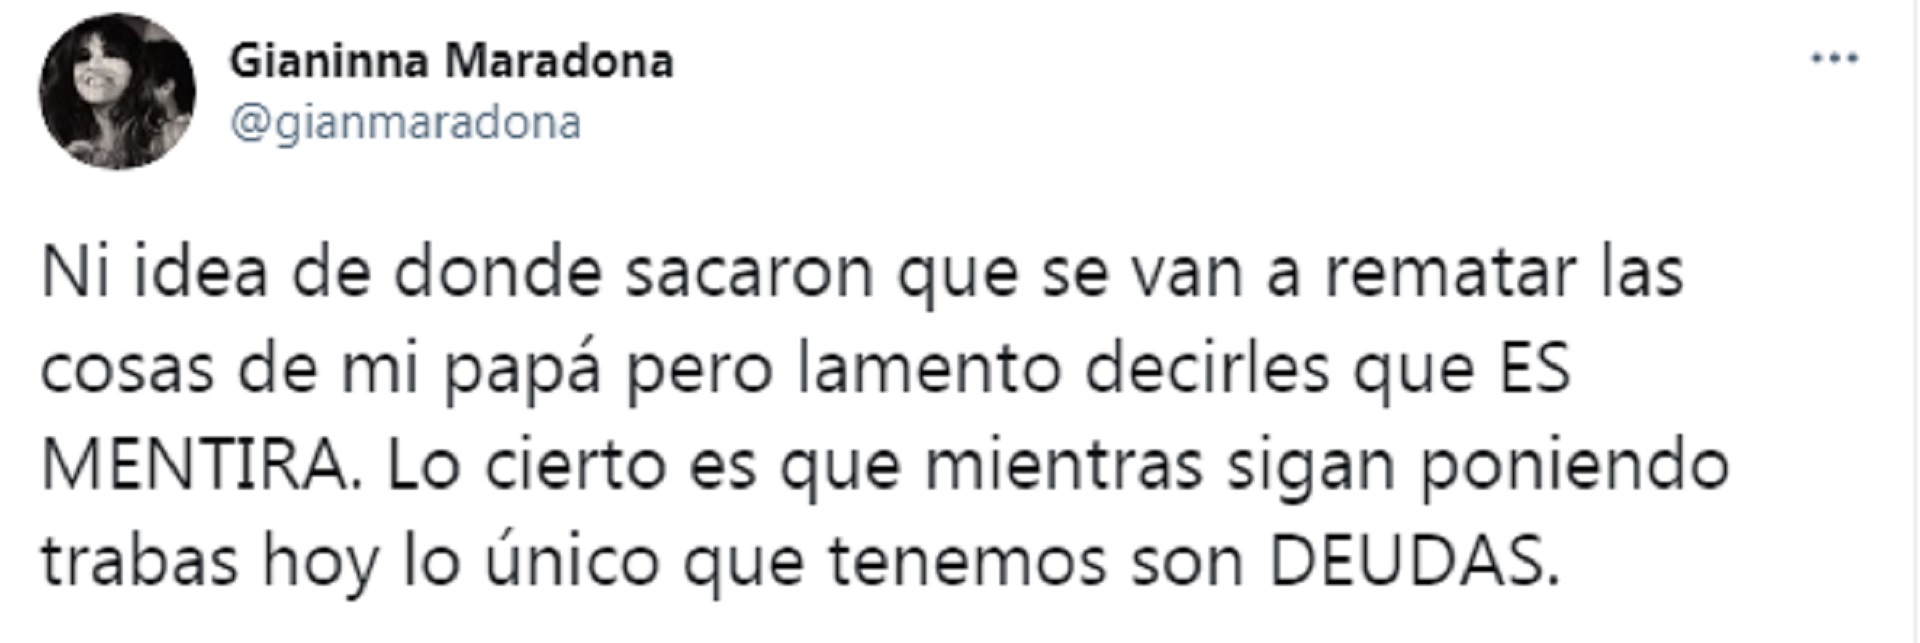 El tuit de Gianinna Maradona